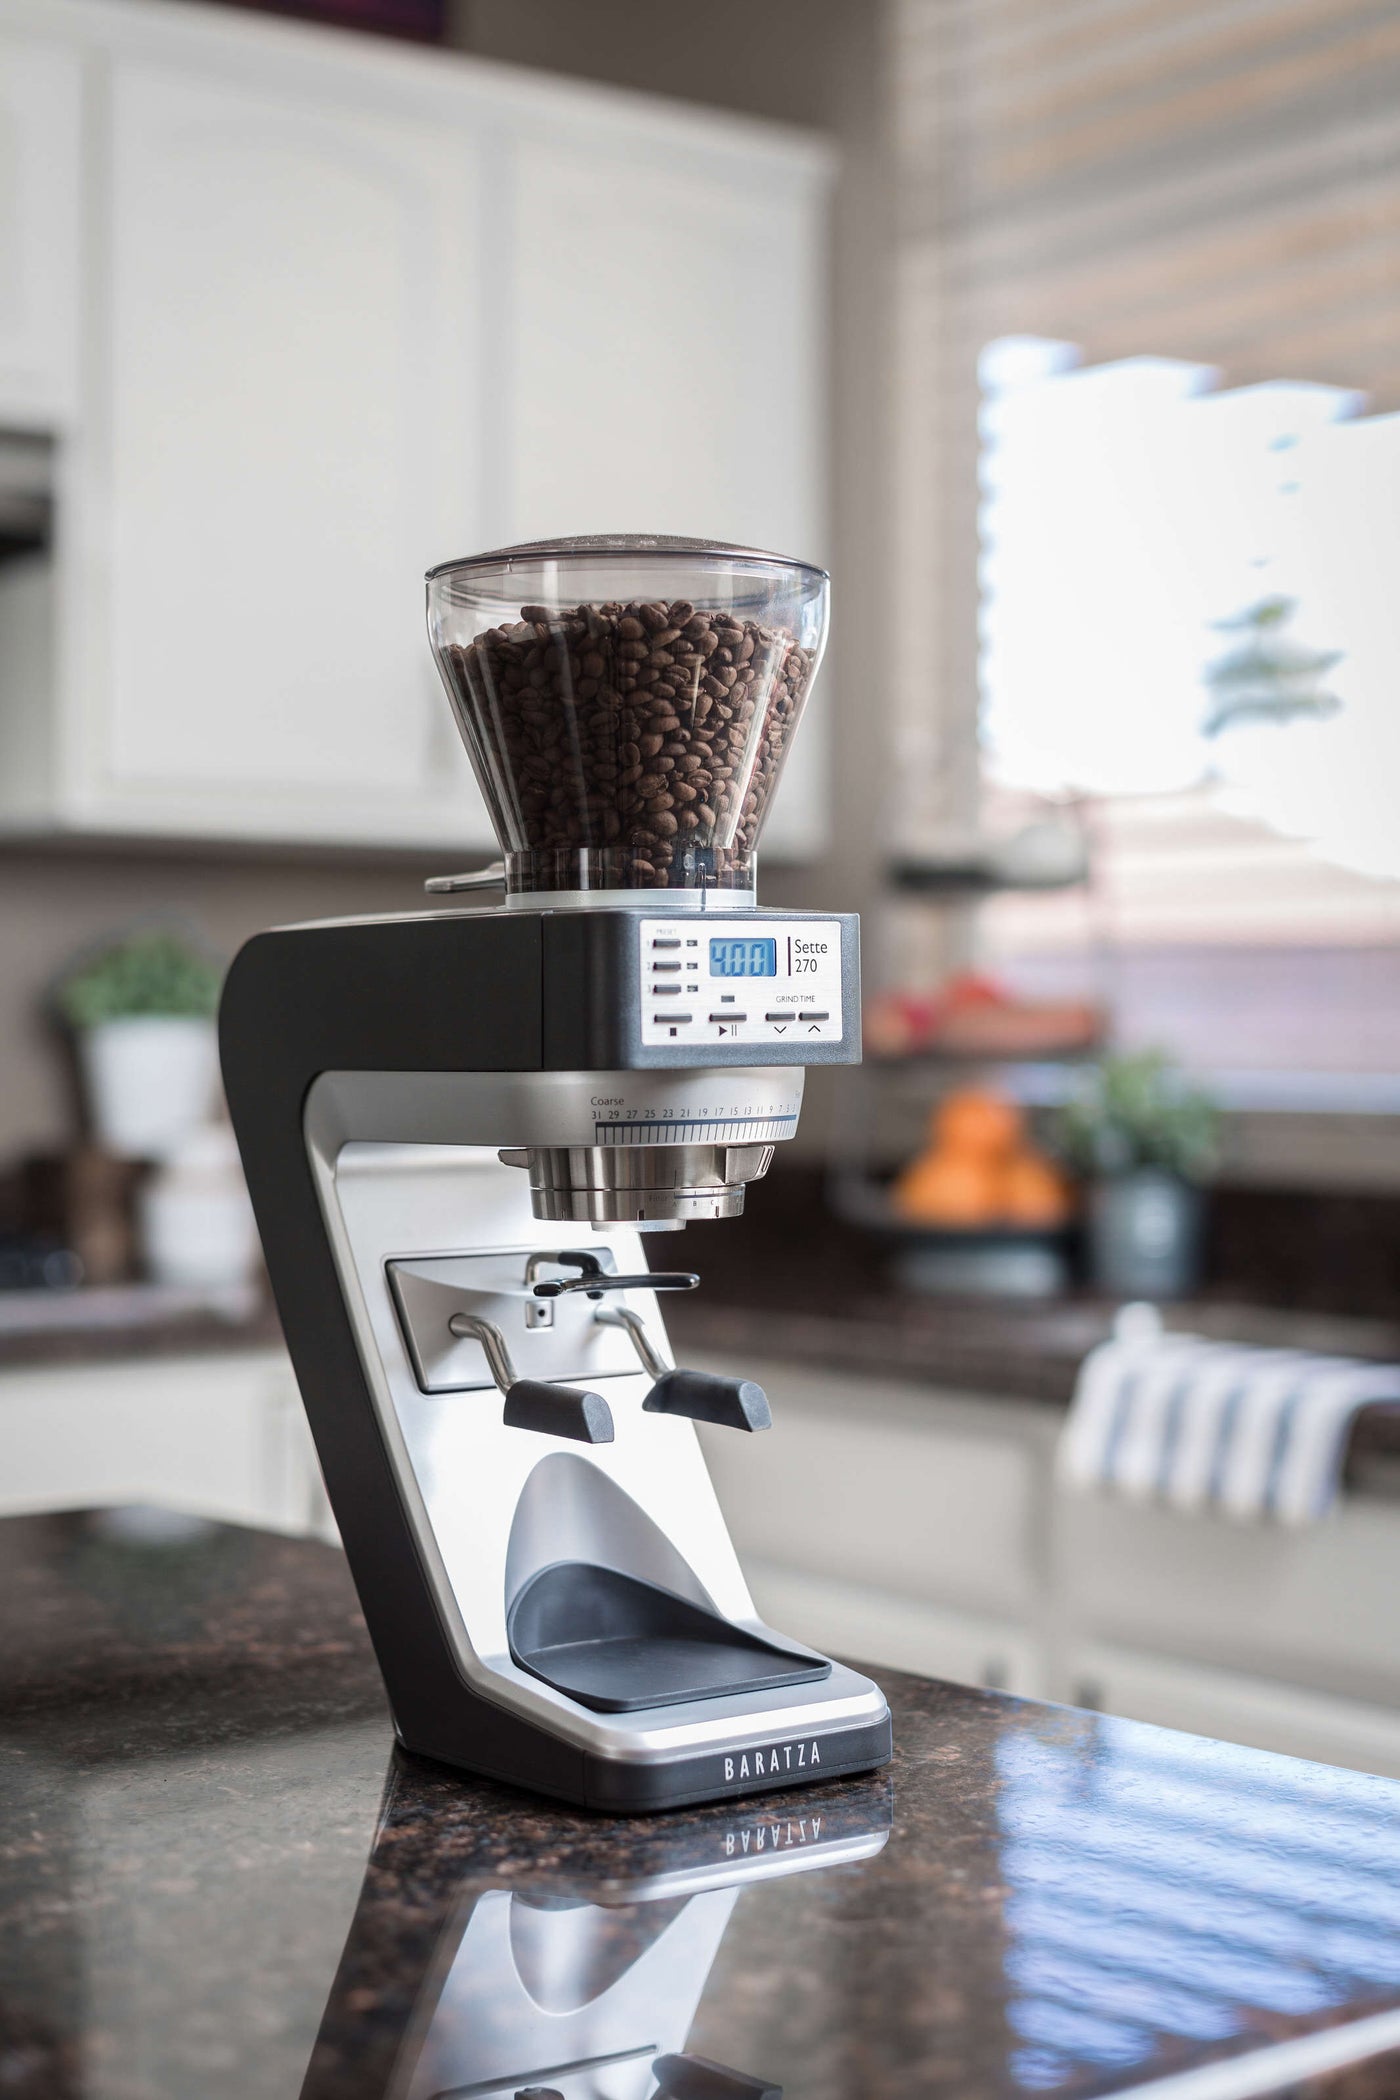 Best Coffee Grinder Conical Burr: Breville Smart Pro 2021